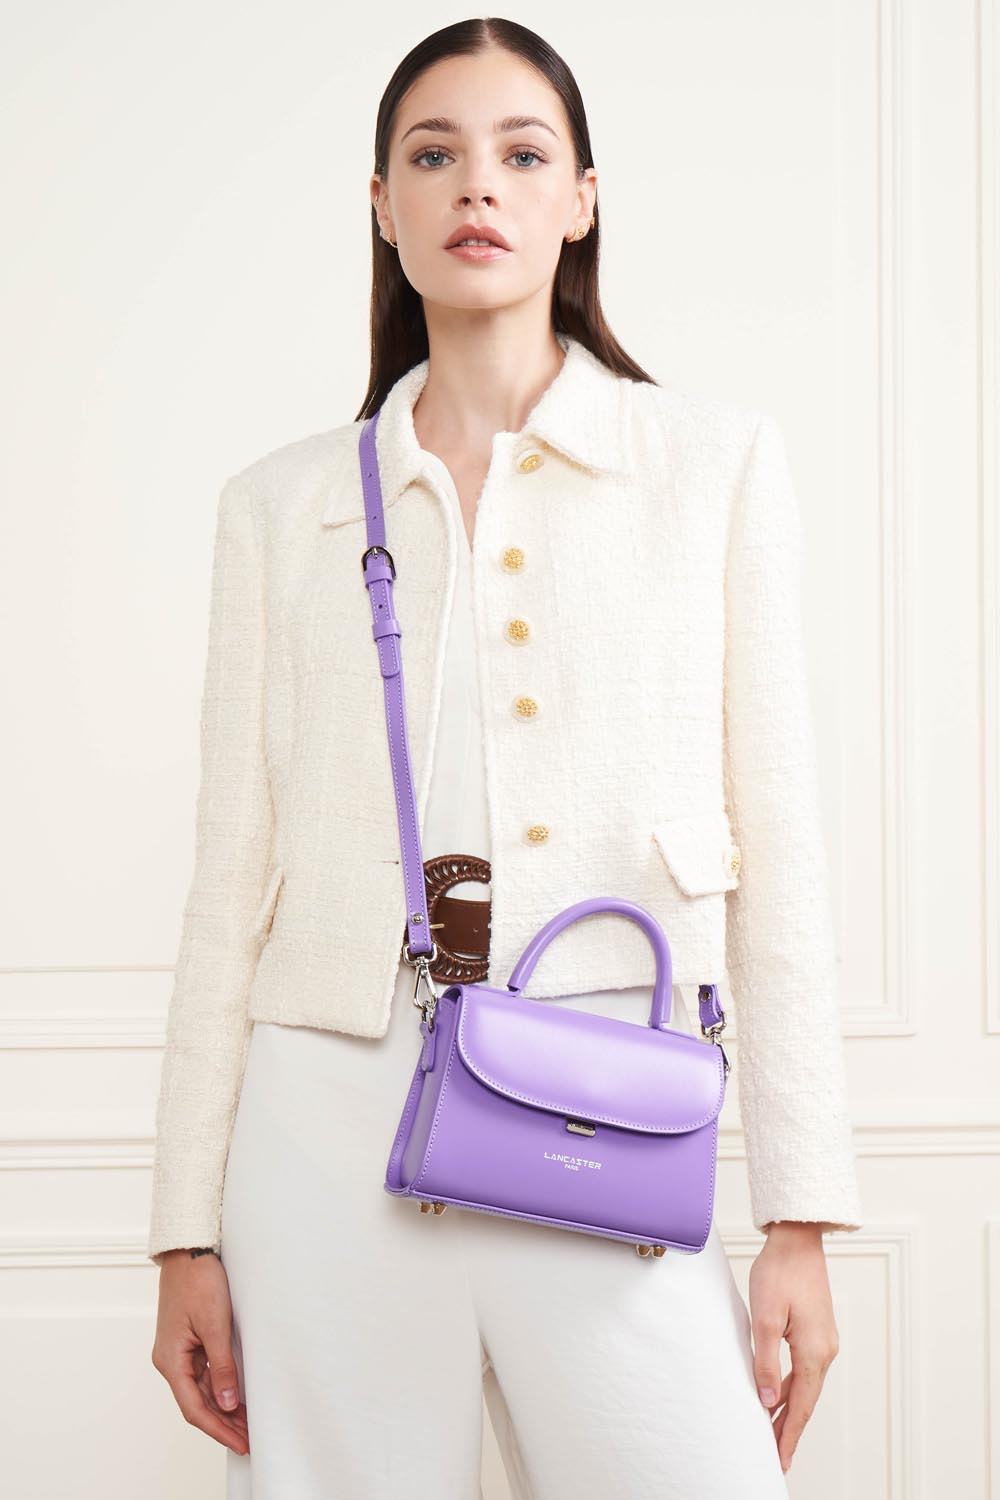 small handbag - suave even #couleur_iris